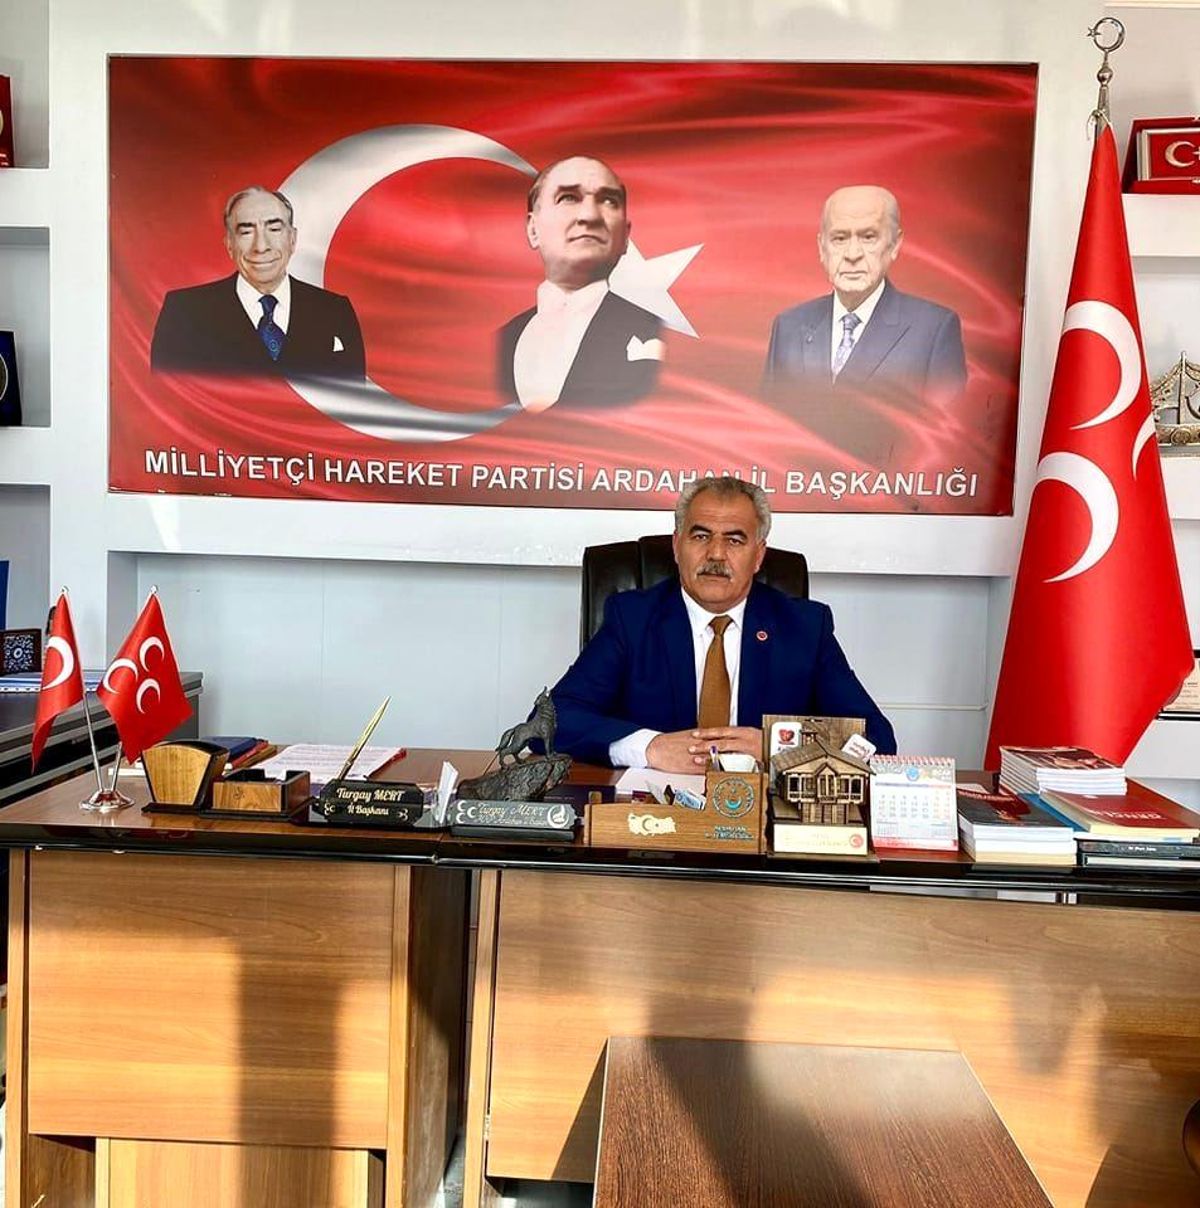 MHP Ardahan Vilayet Lideri Mert: "Hizmet için yola çıktık"